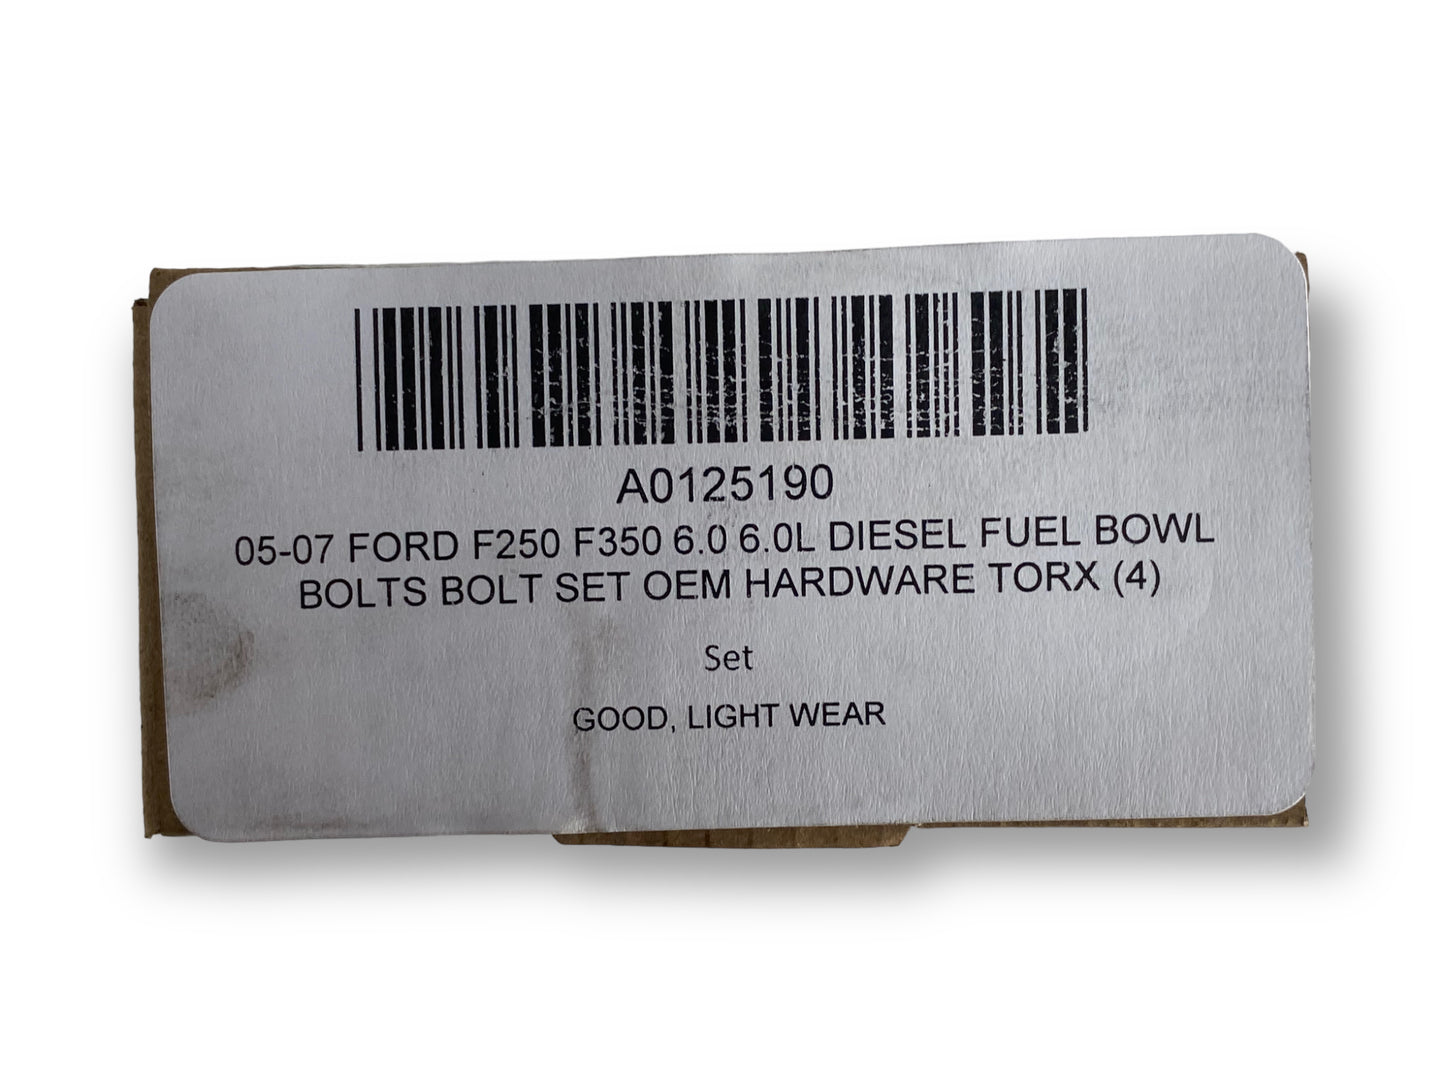 05-07 Ford F250 F350 6.0 6.0L Diesel Fuel Bowl Bolts Bolt Set OEM Hardware Torx (4)